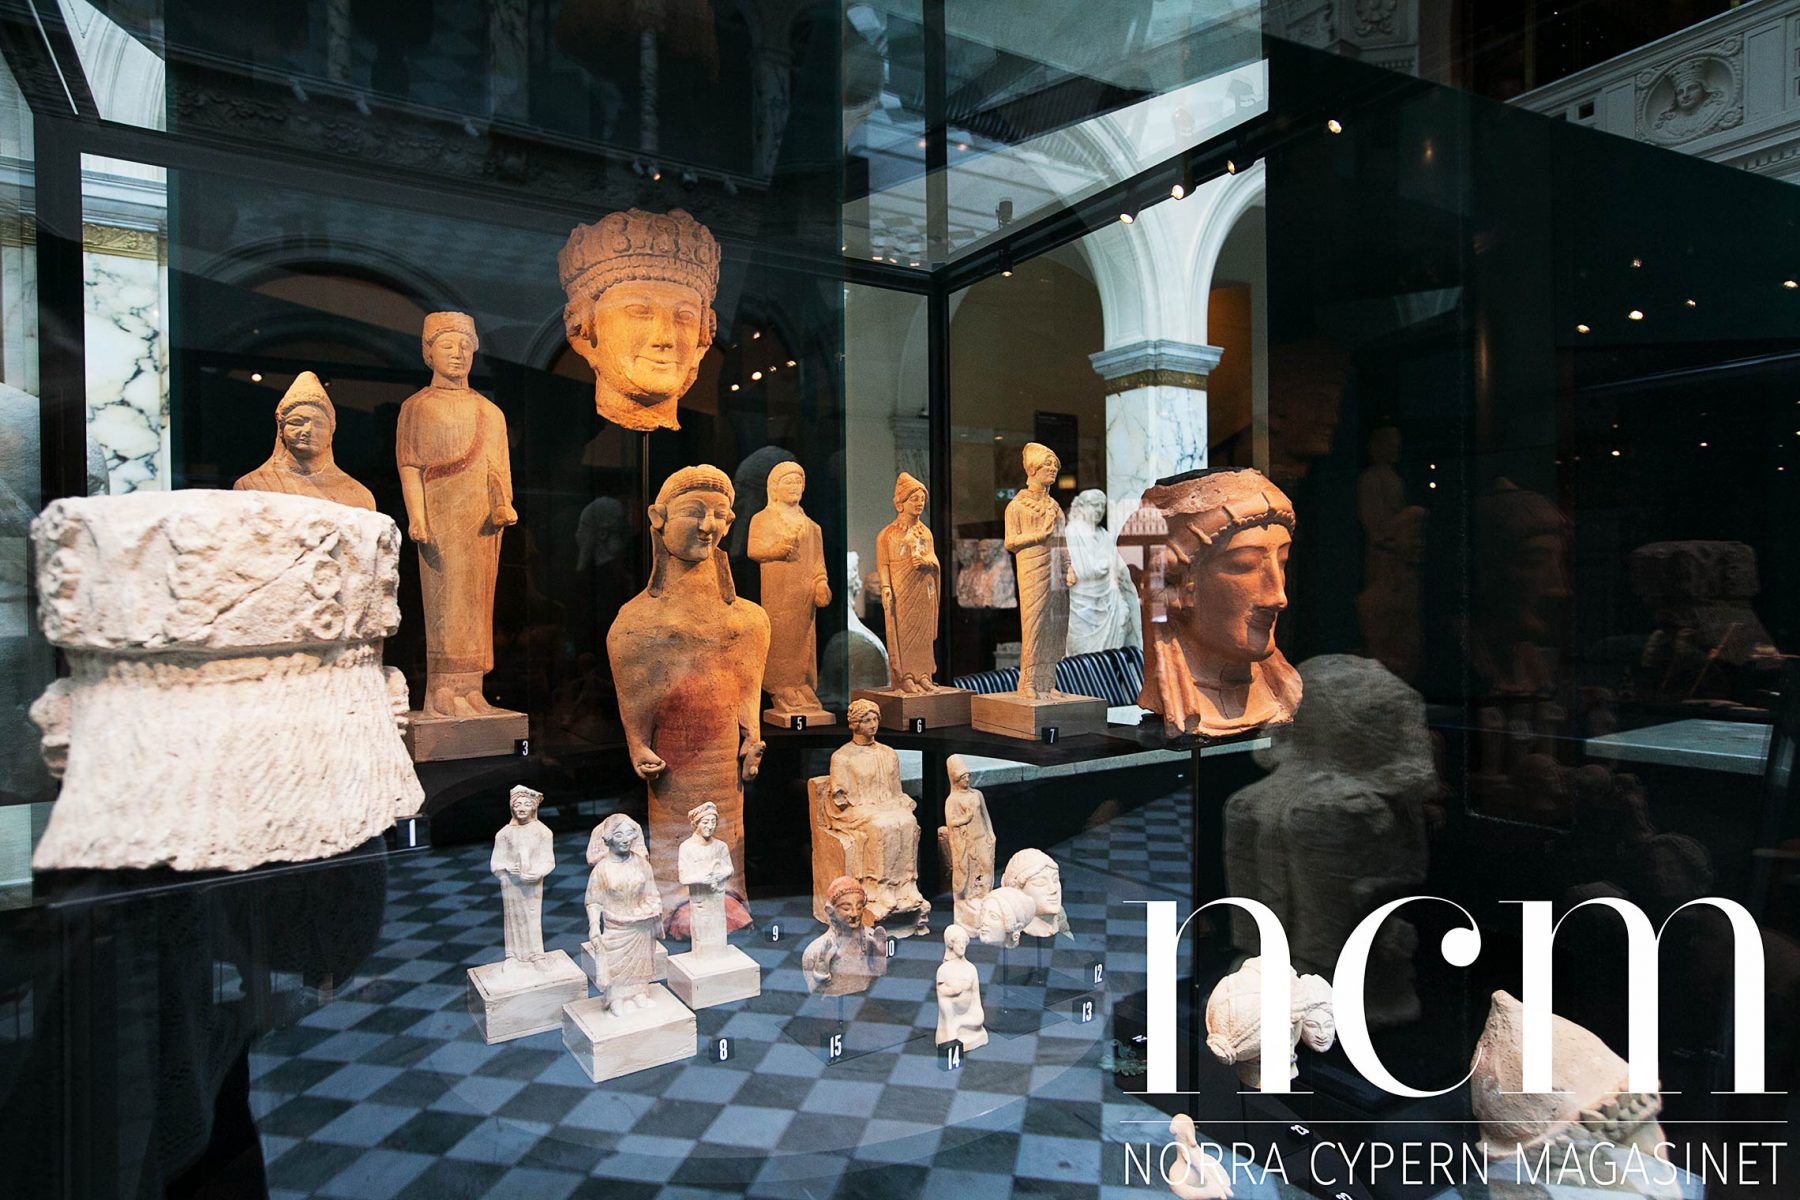 på medelhavsmuseet i stockholm finns arkeologiska fynd från cypern, egypten och andra platser runt medelhavet